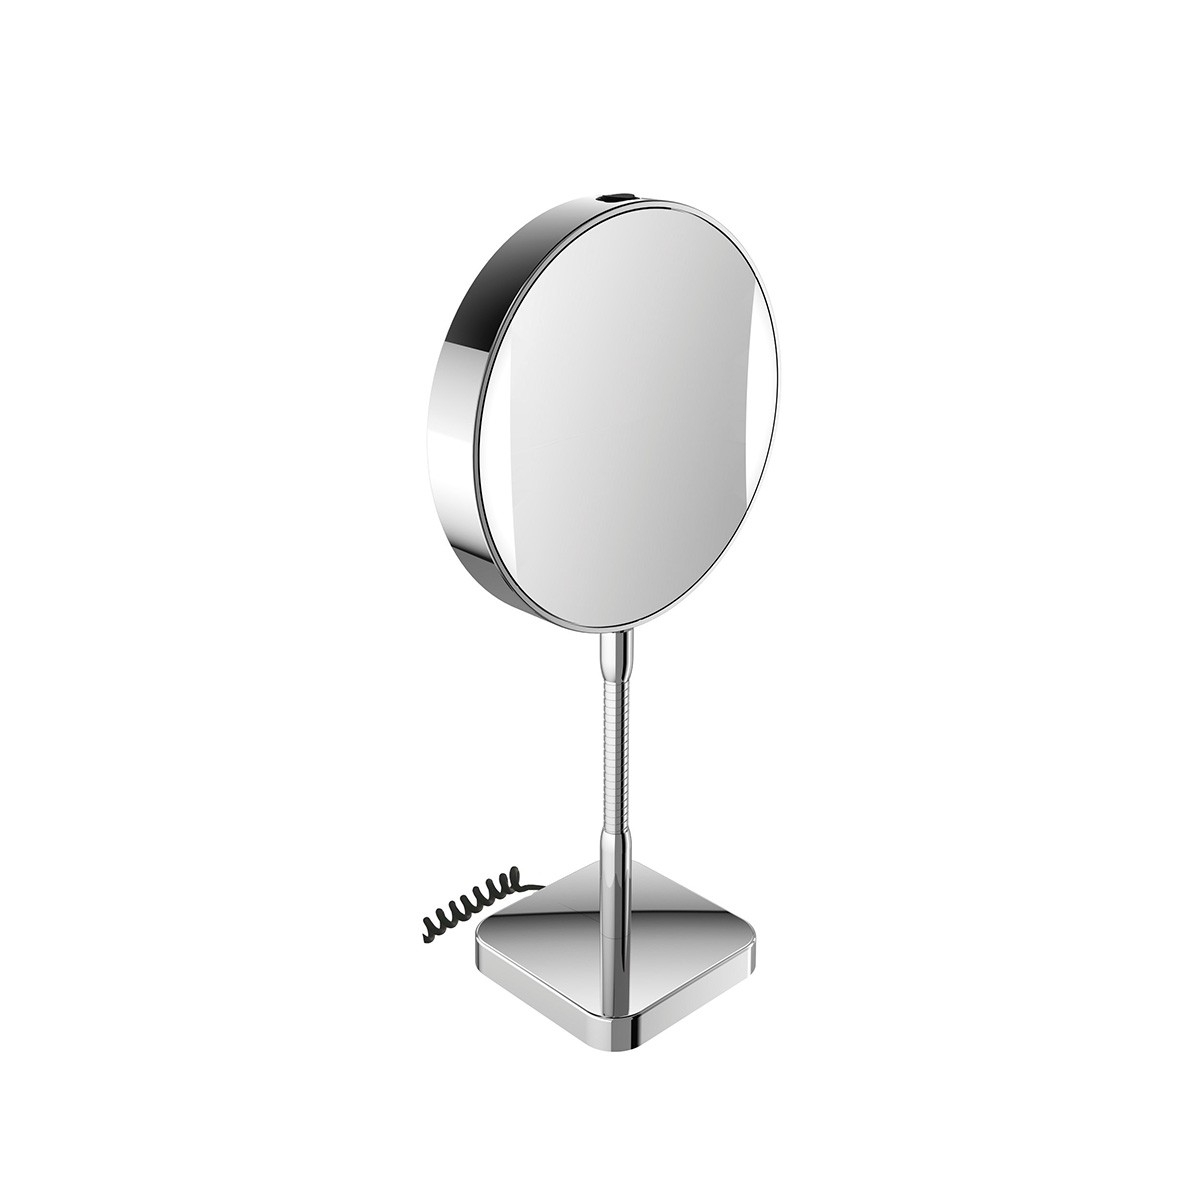 Spiegel 1095.001.13 magnifying mirror